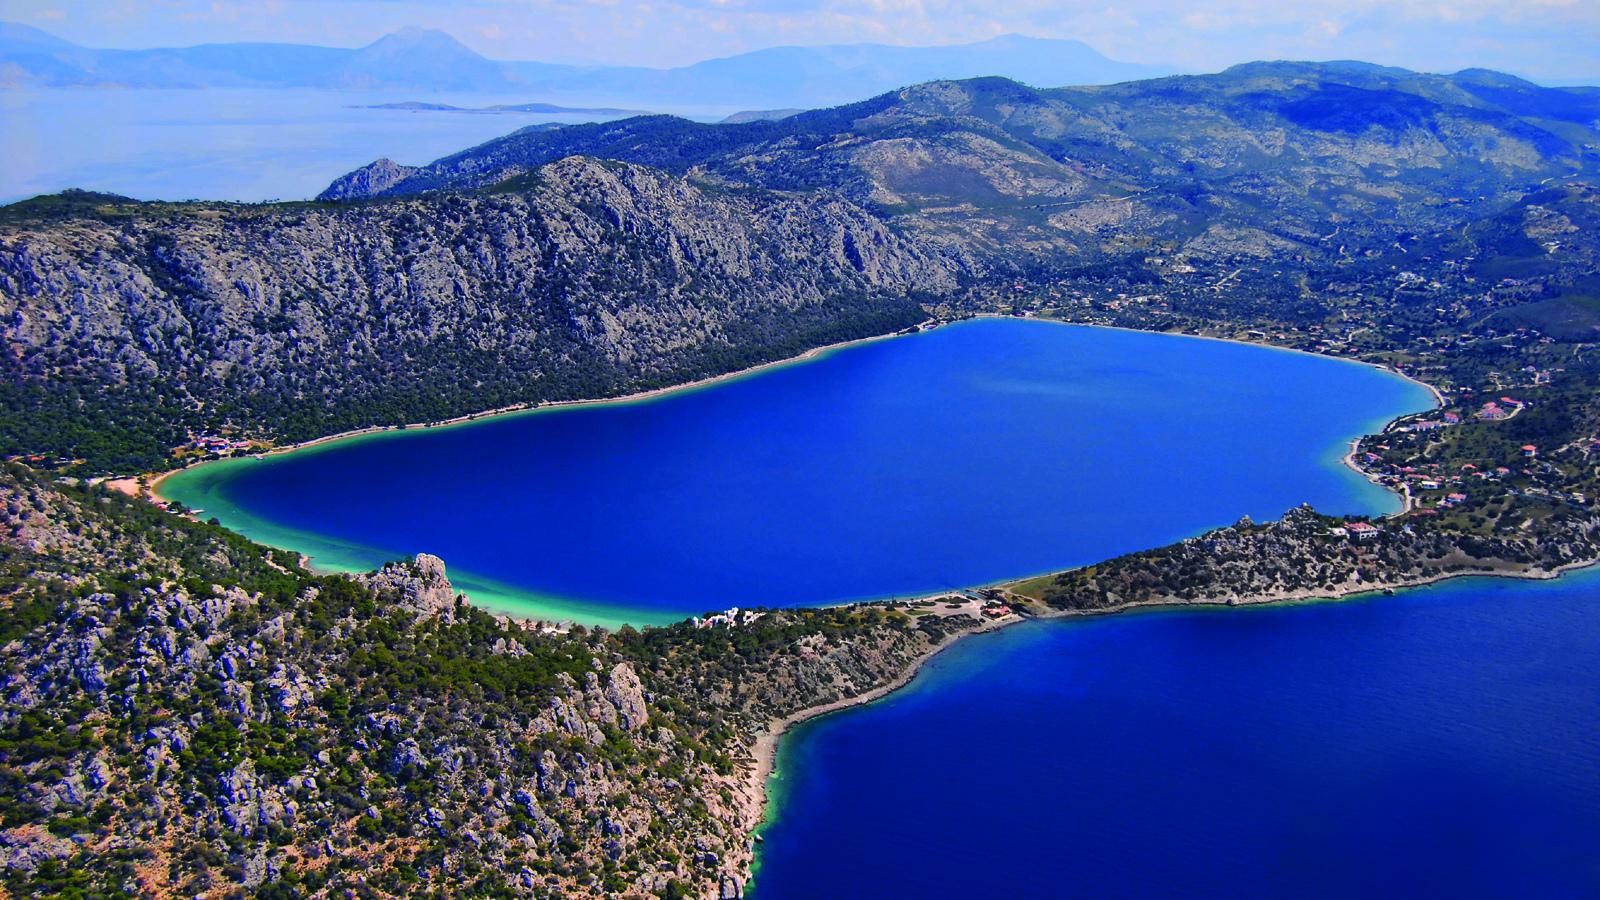 Η μαγευτική λίμνη στην Ελλάδα με τα νερά που ανανεώνονται κάθε έξι ώρες με το παλιρροιακό φαινόμενο (βίντεο)